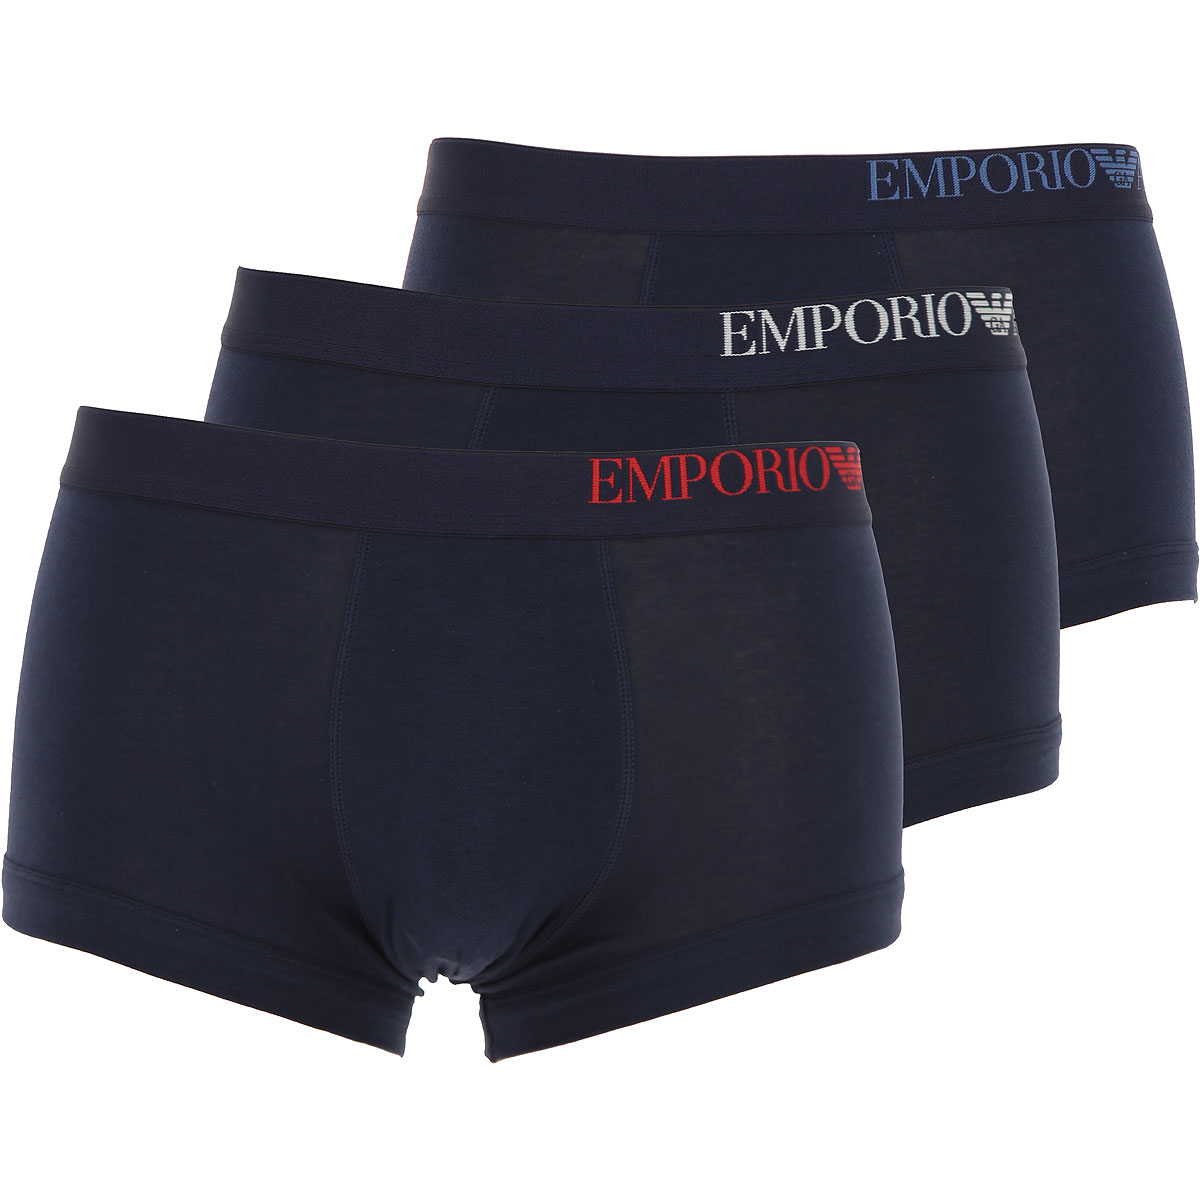 Emporio Armani Boxer Shorts für Herren, Unterhose, Short, Boxer Günstig im Sale, 3 Pack, Marineblau, Baumwolle, 2017, L L M M S S XL XL